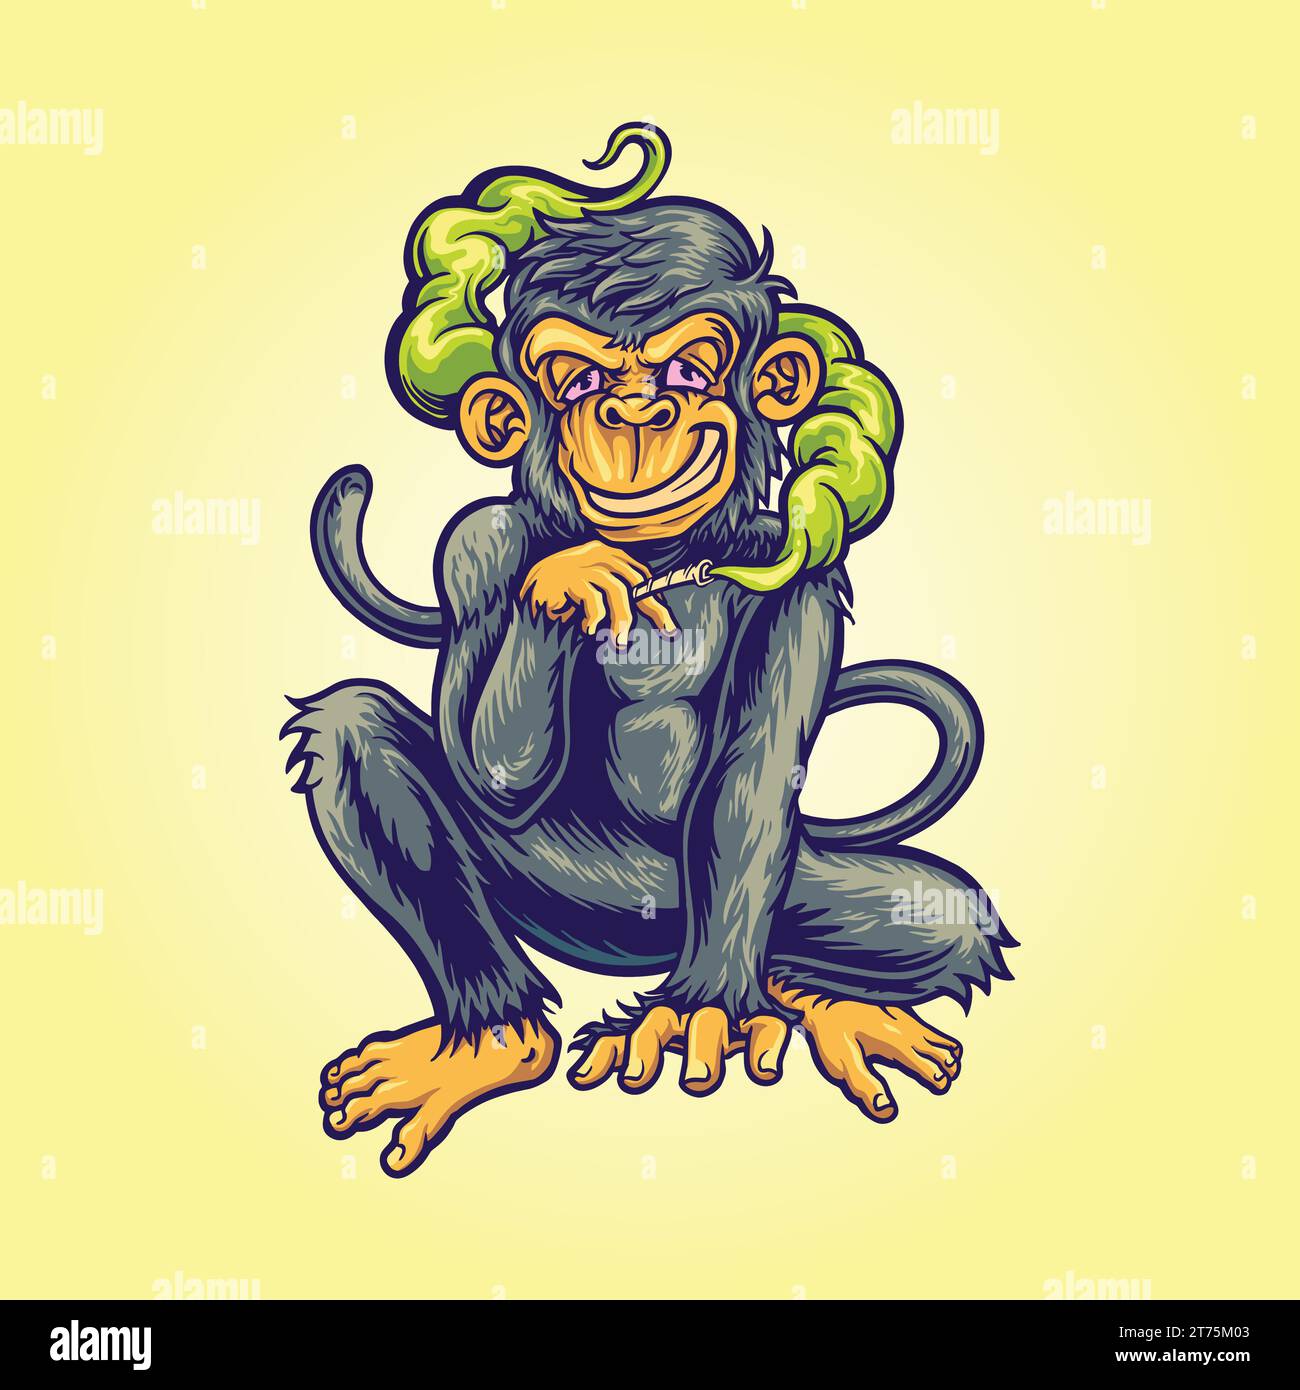 Rauchen Affen Unkraut Wimsy Vektor Illustrationen für Ihre Arbeit Logo, Merchandise T-Shirt, Aufkleber und Label Designs, Poster, Grußkarten Werbung Stock Vektor